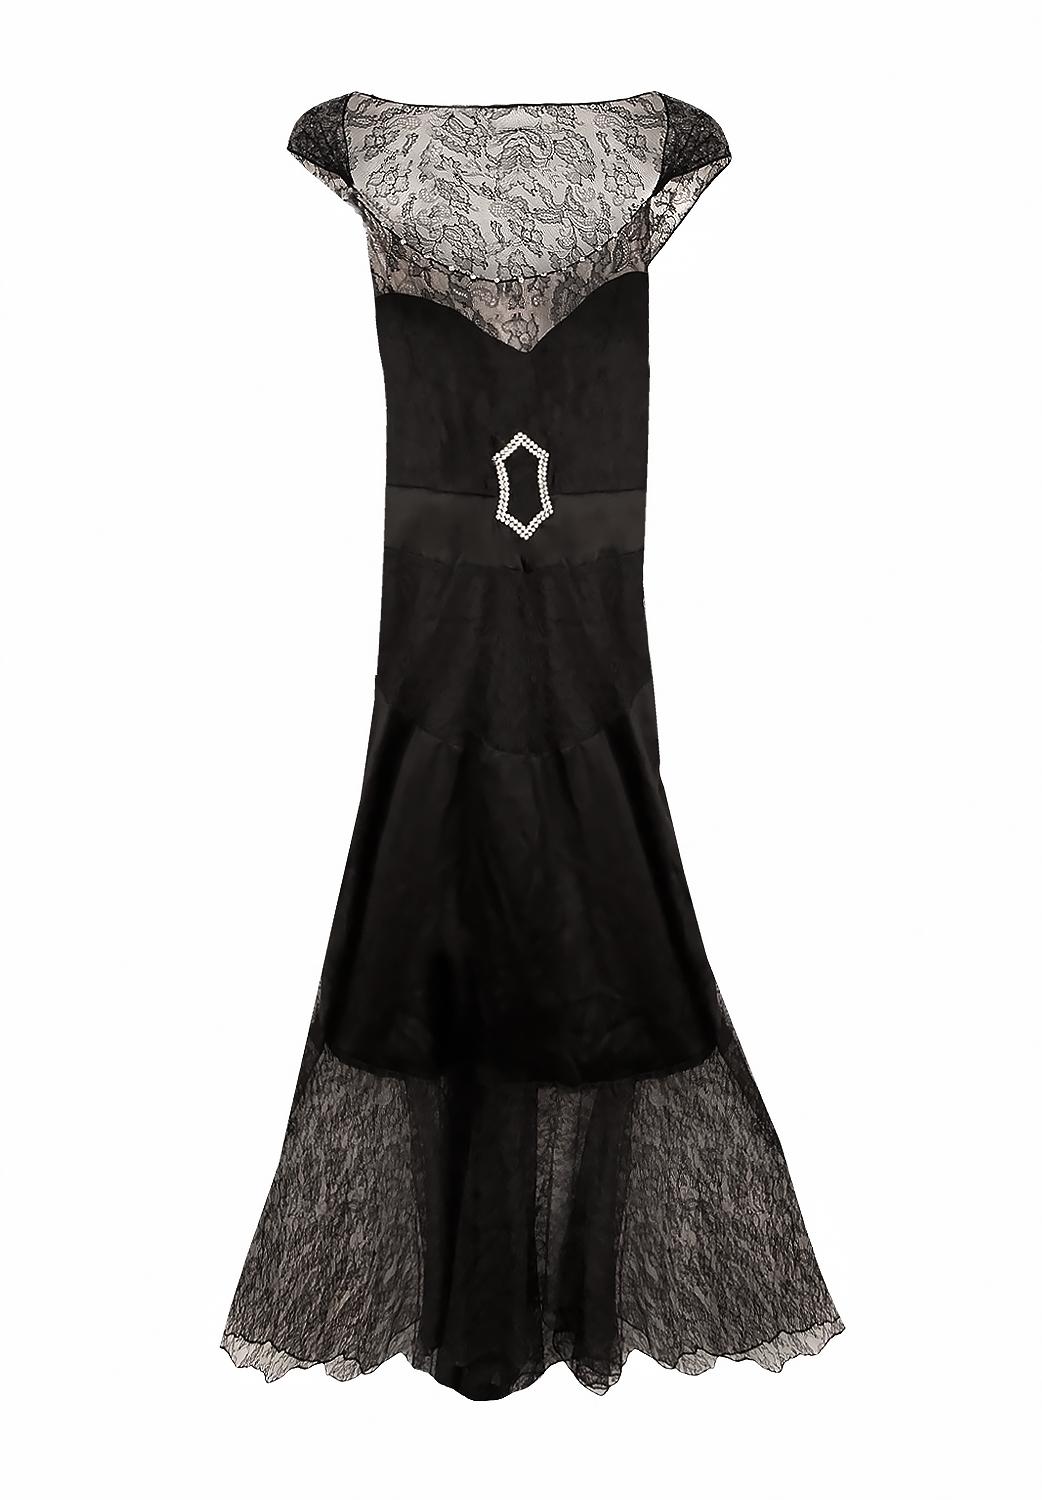 Dies ist eine sehr seltene Vintage 1940er Chanel Couture-Kleid. 
Kleid mit gerader Silhouette, bestehend aus einem Rock und einer Bluse, mit zartem, mit einer Schleife verziertem Rückenausschnitt.
MATERIAL: Seide, Spitze 
Zeitraum: 1940er Jahre ,